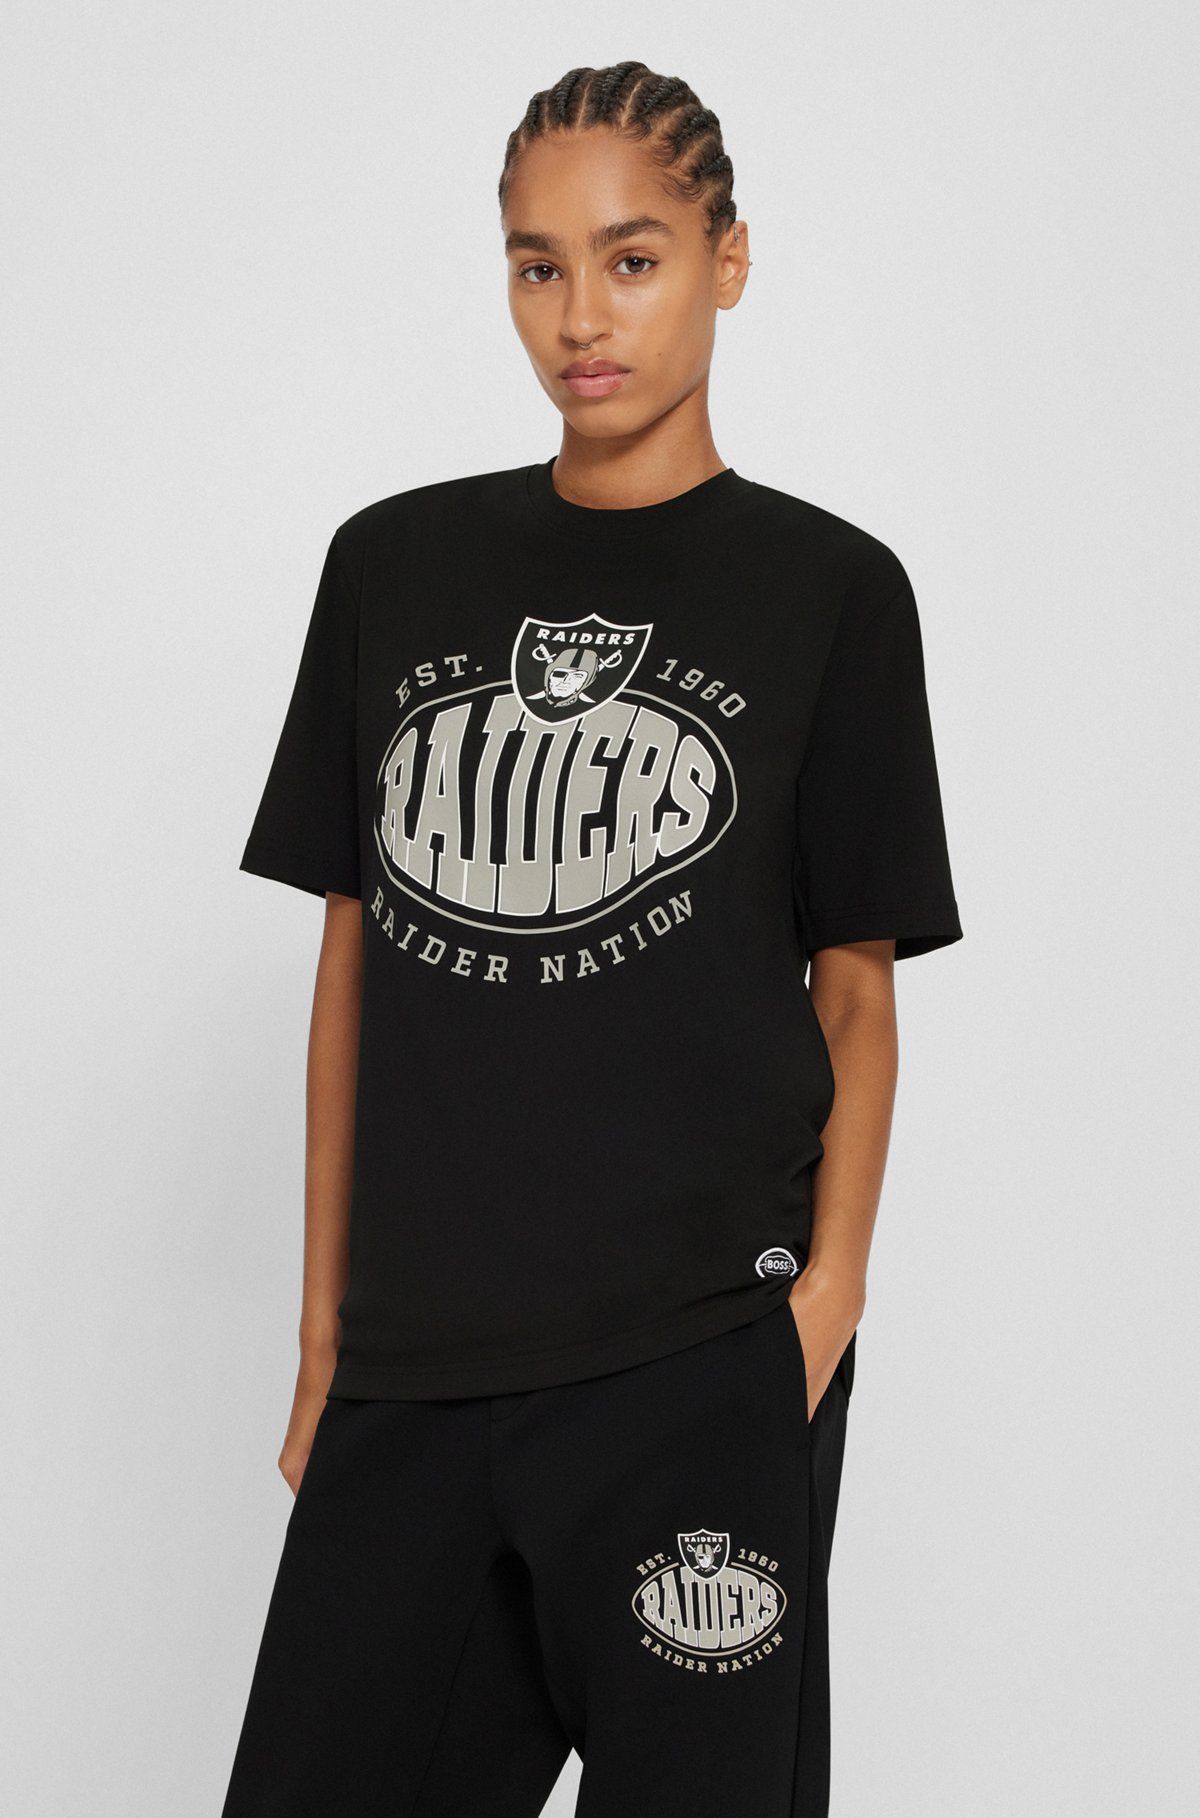  BOSS x NFL T-shirt i bomuld med stræk og fælles branding, Raiders